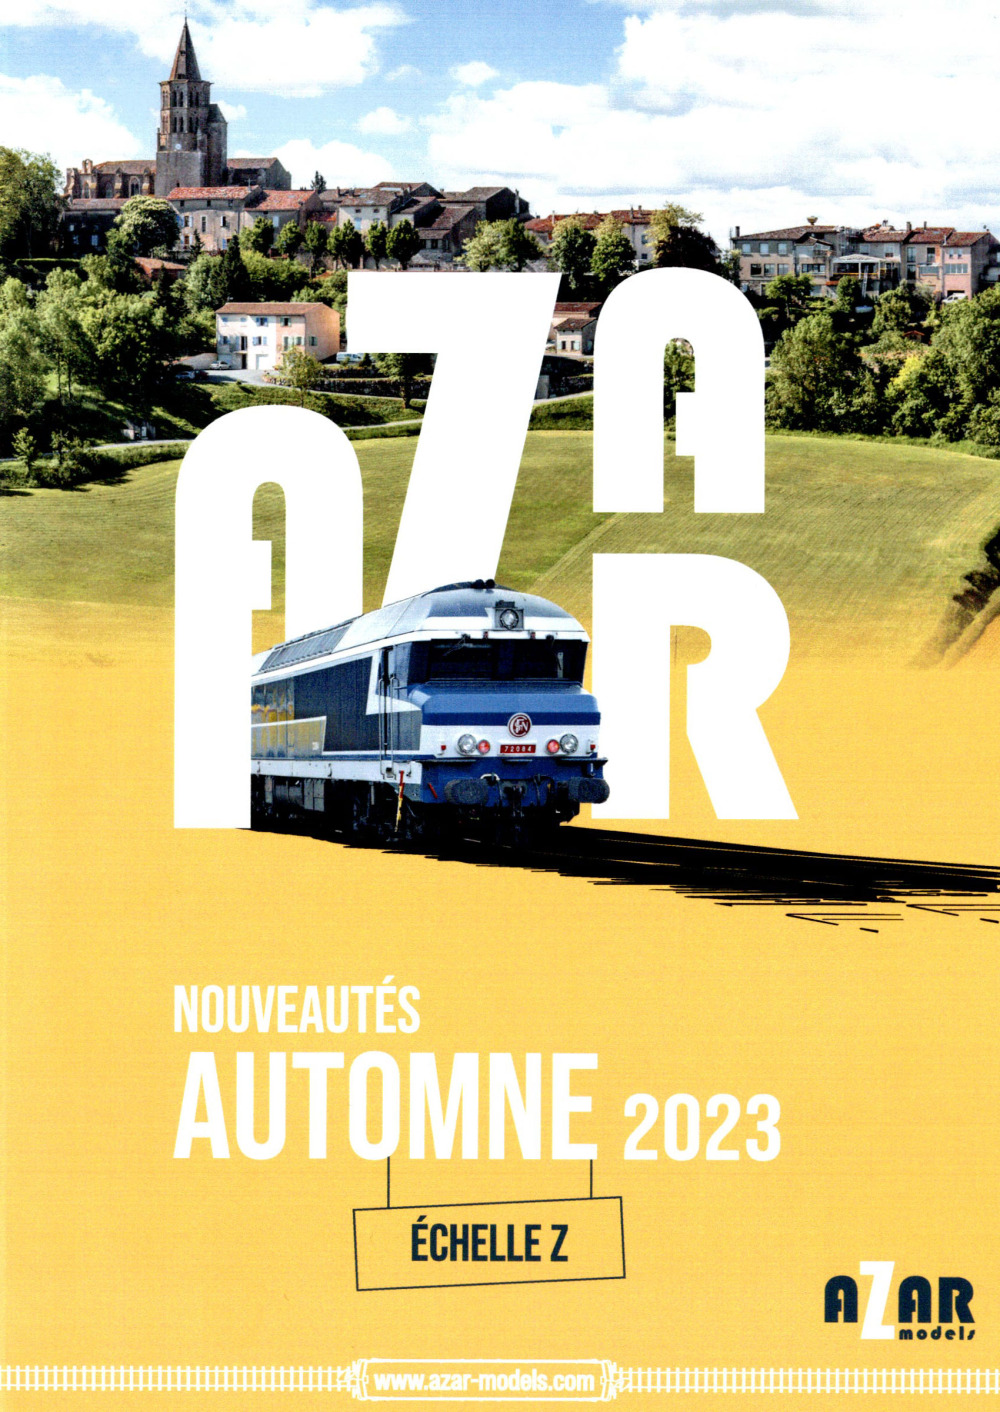 AZAR MODELS - Novelties Autumn 2023